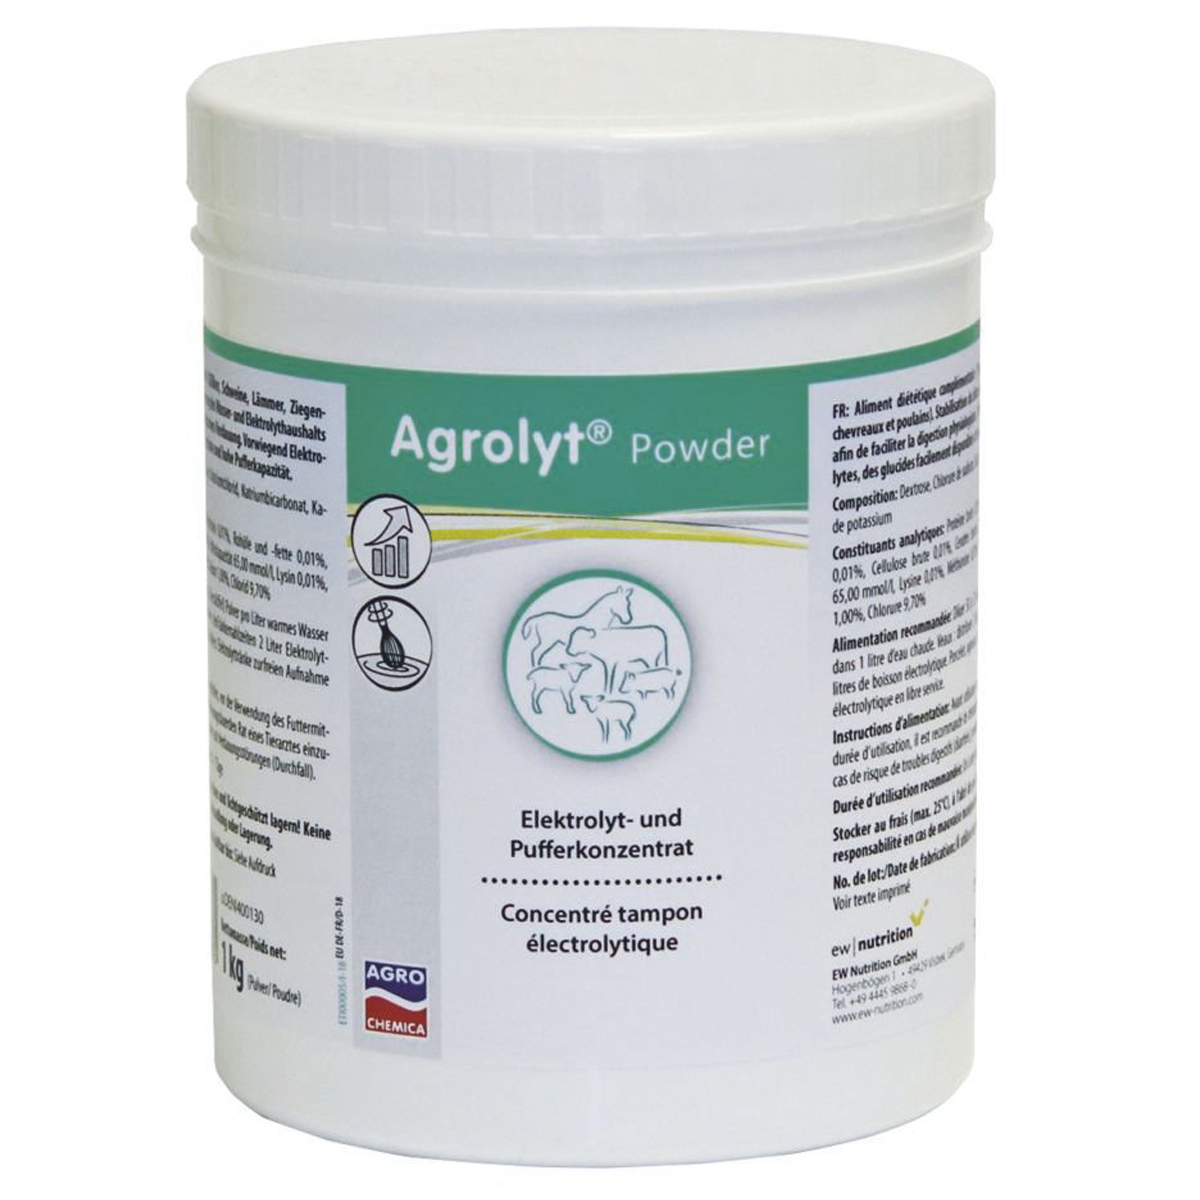 Agrolyt powder